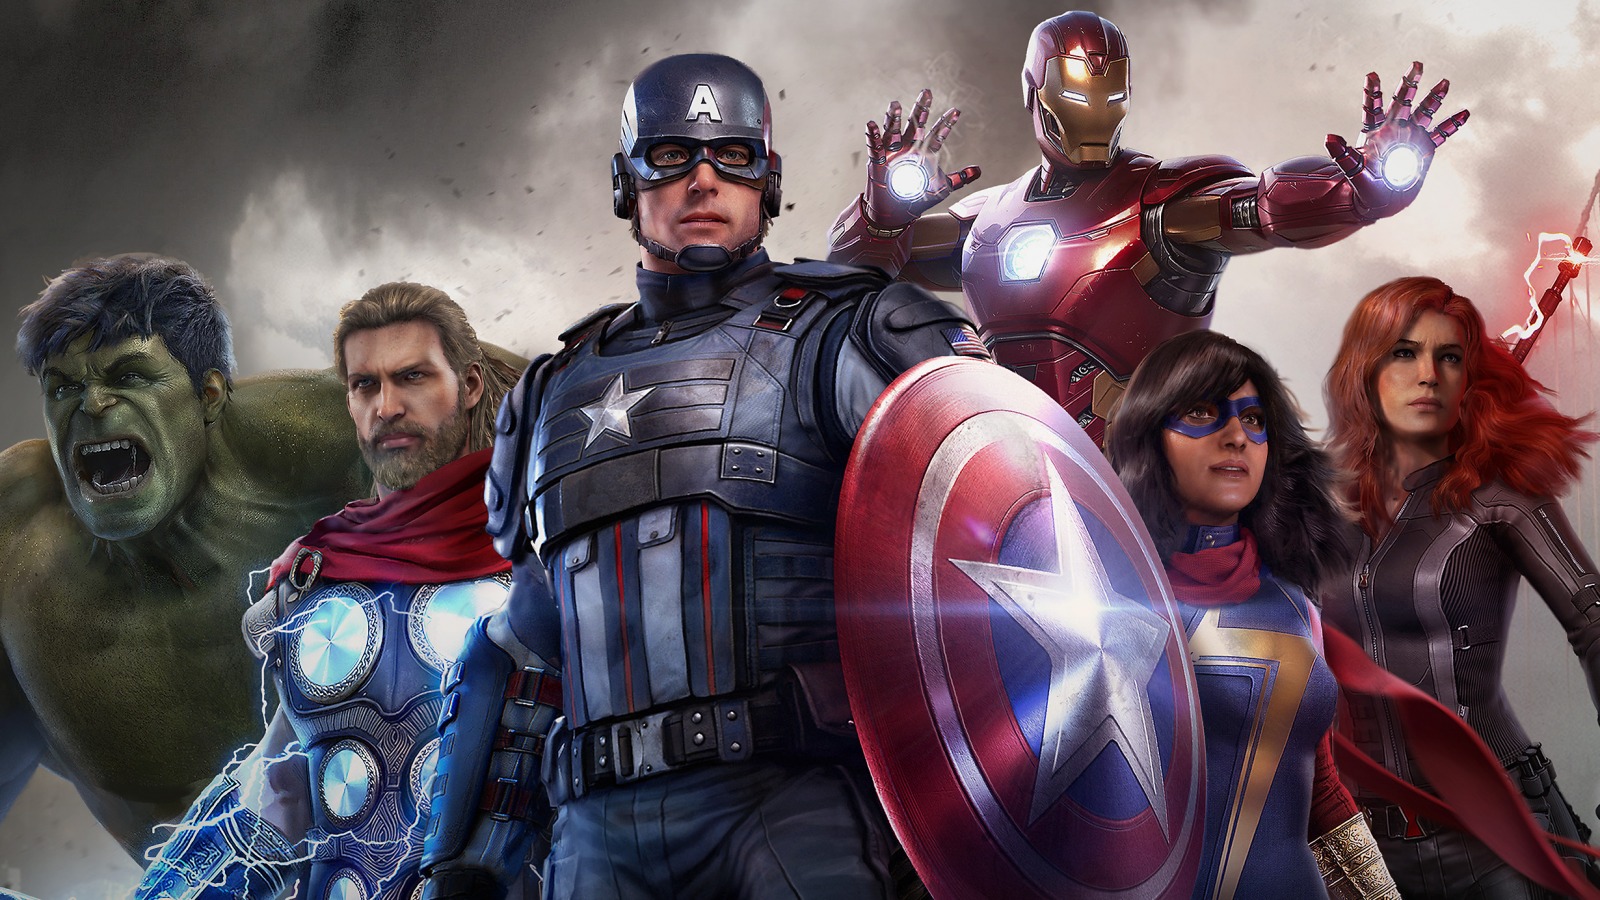 Avengers video game, best and worst: Bạn muốn cập nhật thông tin về những game video Avengers tốt nhất và tồi nhất? Hãy chiêm ngưỡng những hình ảnh đầy hứng thú của trò chơi Avengers và khám phá những hiệu ứng ấn tượng của game.